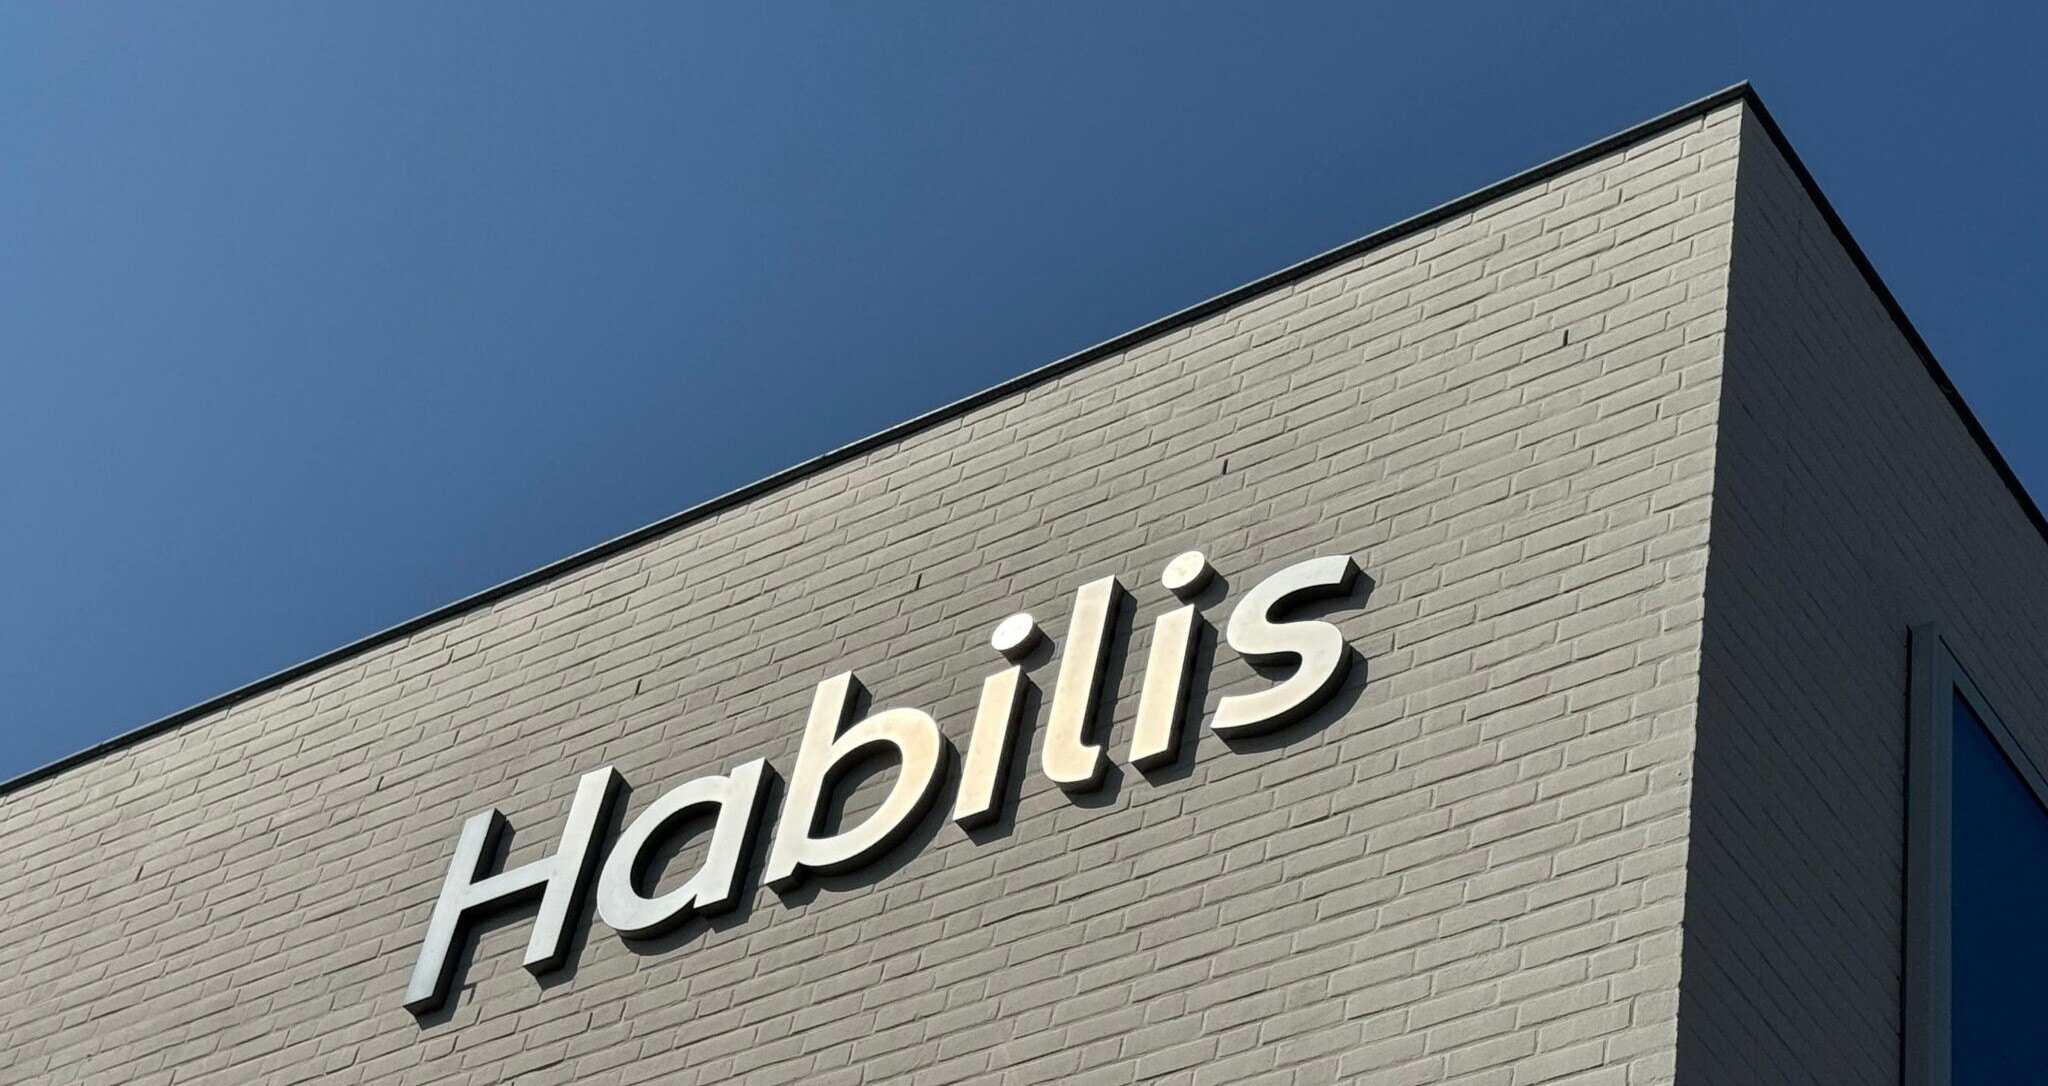 Habilis logo pand 2